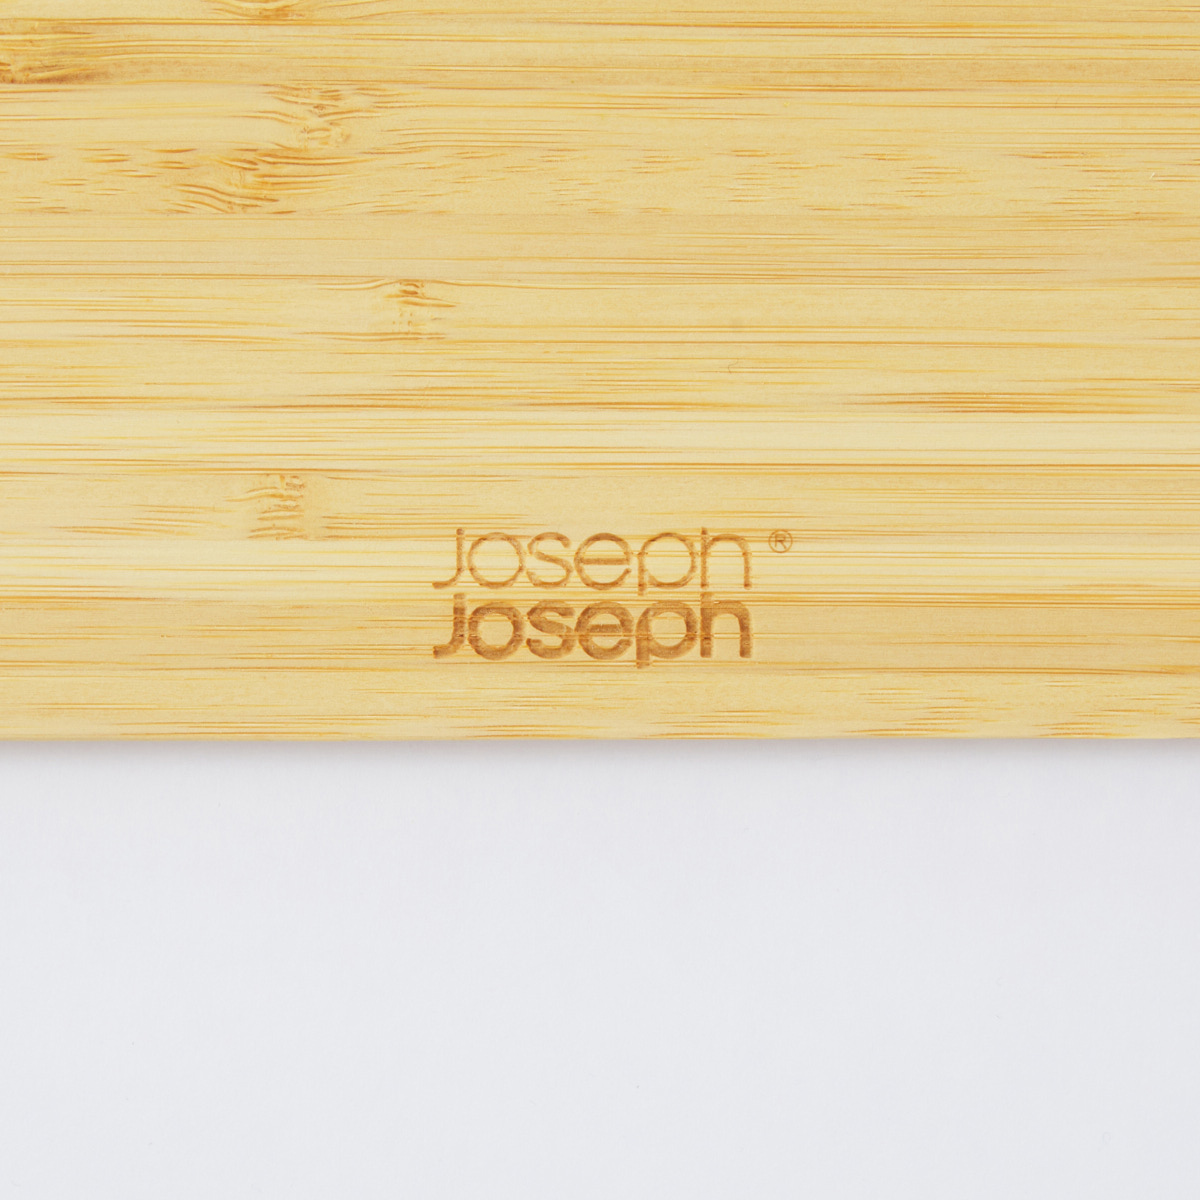 【JosephJoseph】チョップ 2ポット バンブー ラージ